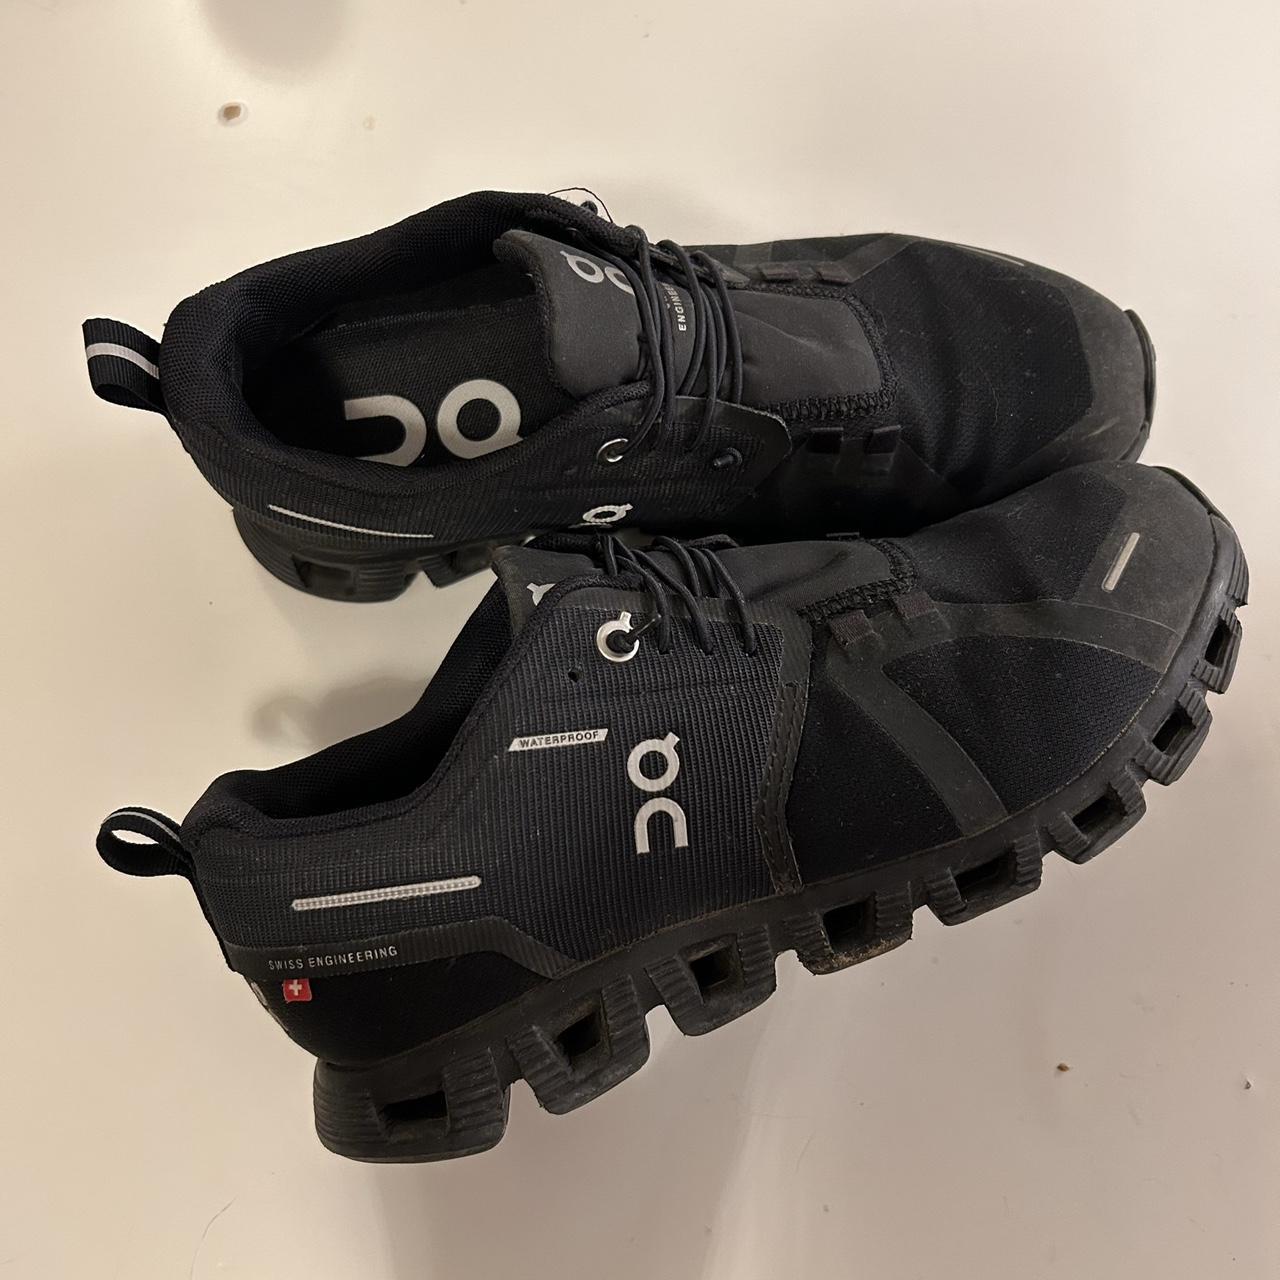 ON cloud 5 waterproof running shoes/trainers in... - Depop